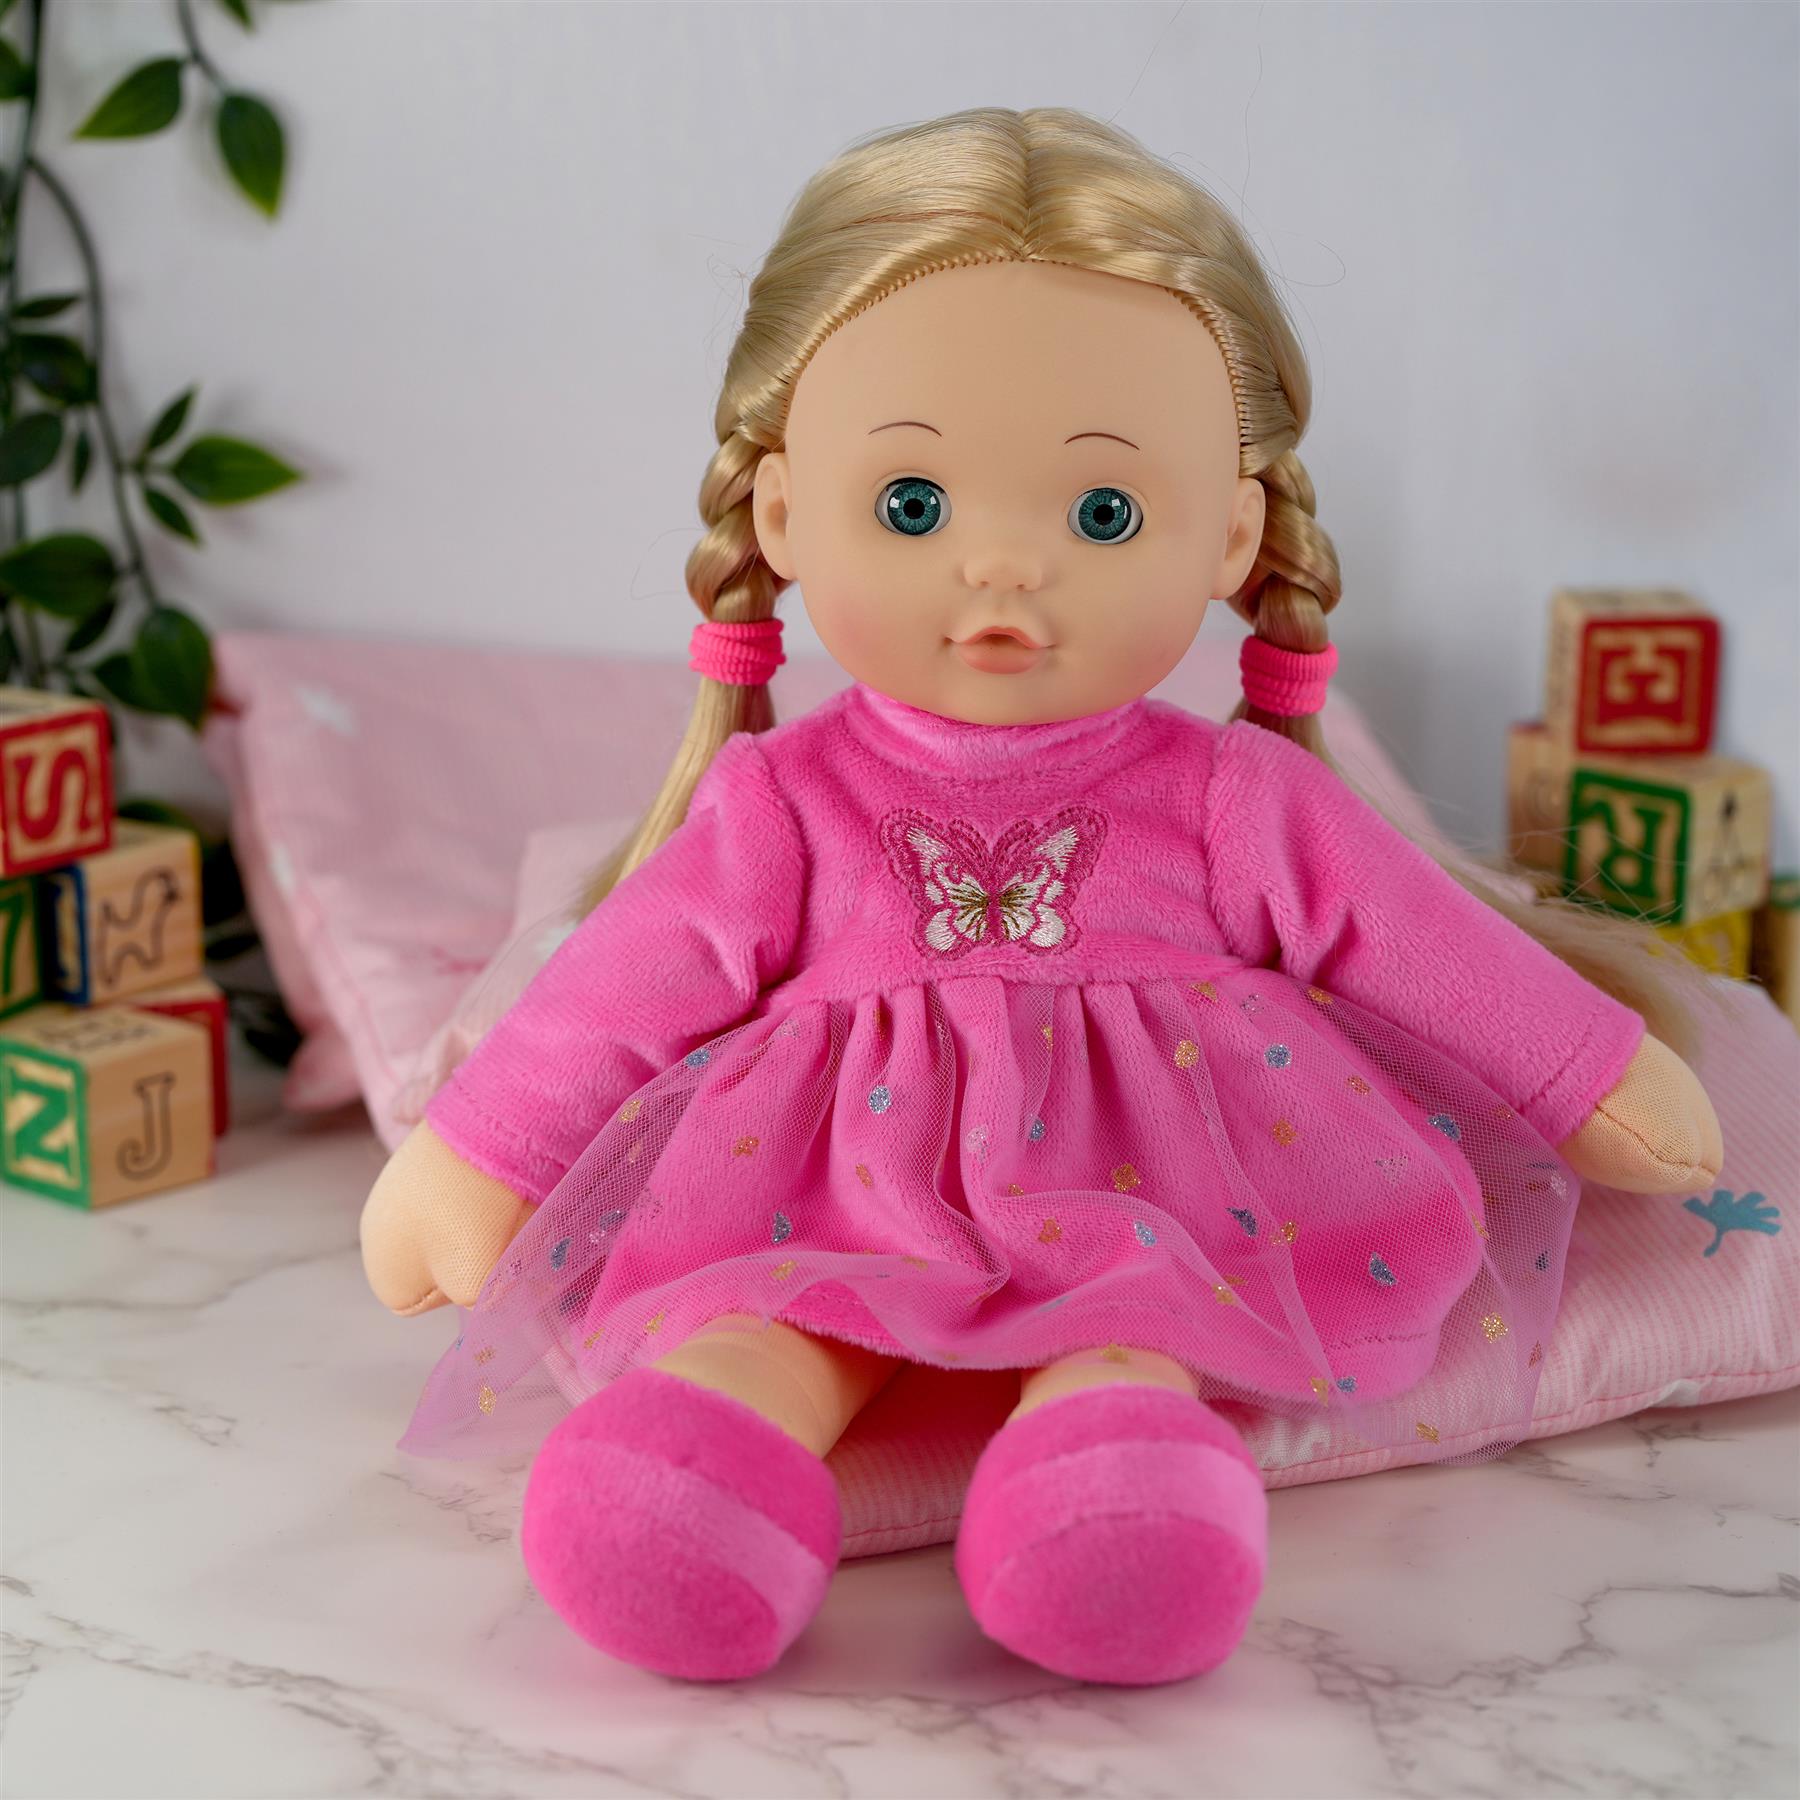 BiBi Soft Doll "Betty Rags" (30 cm /12") by BiBi Doll - The Magic Toy Shop